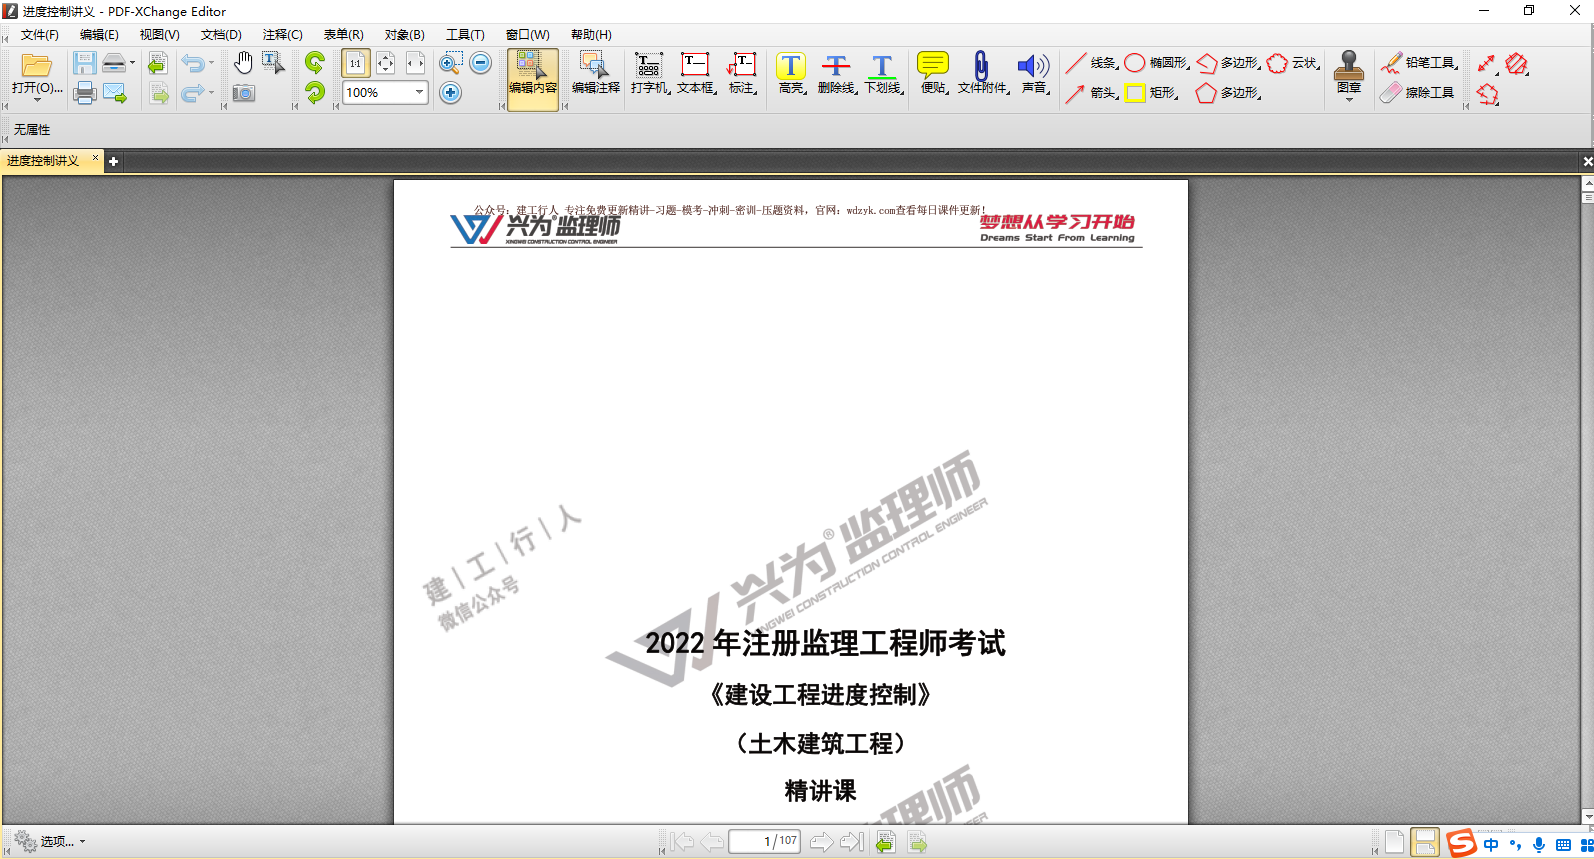 分享一款PDF编辑器【PDF-XChange Editor 】